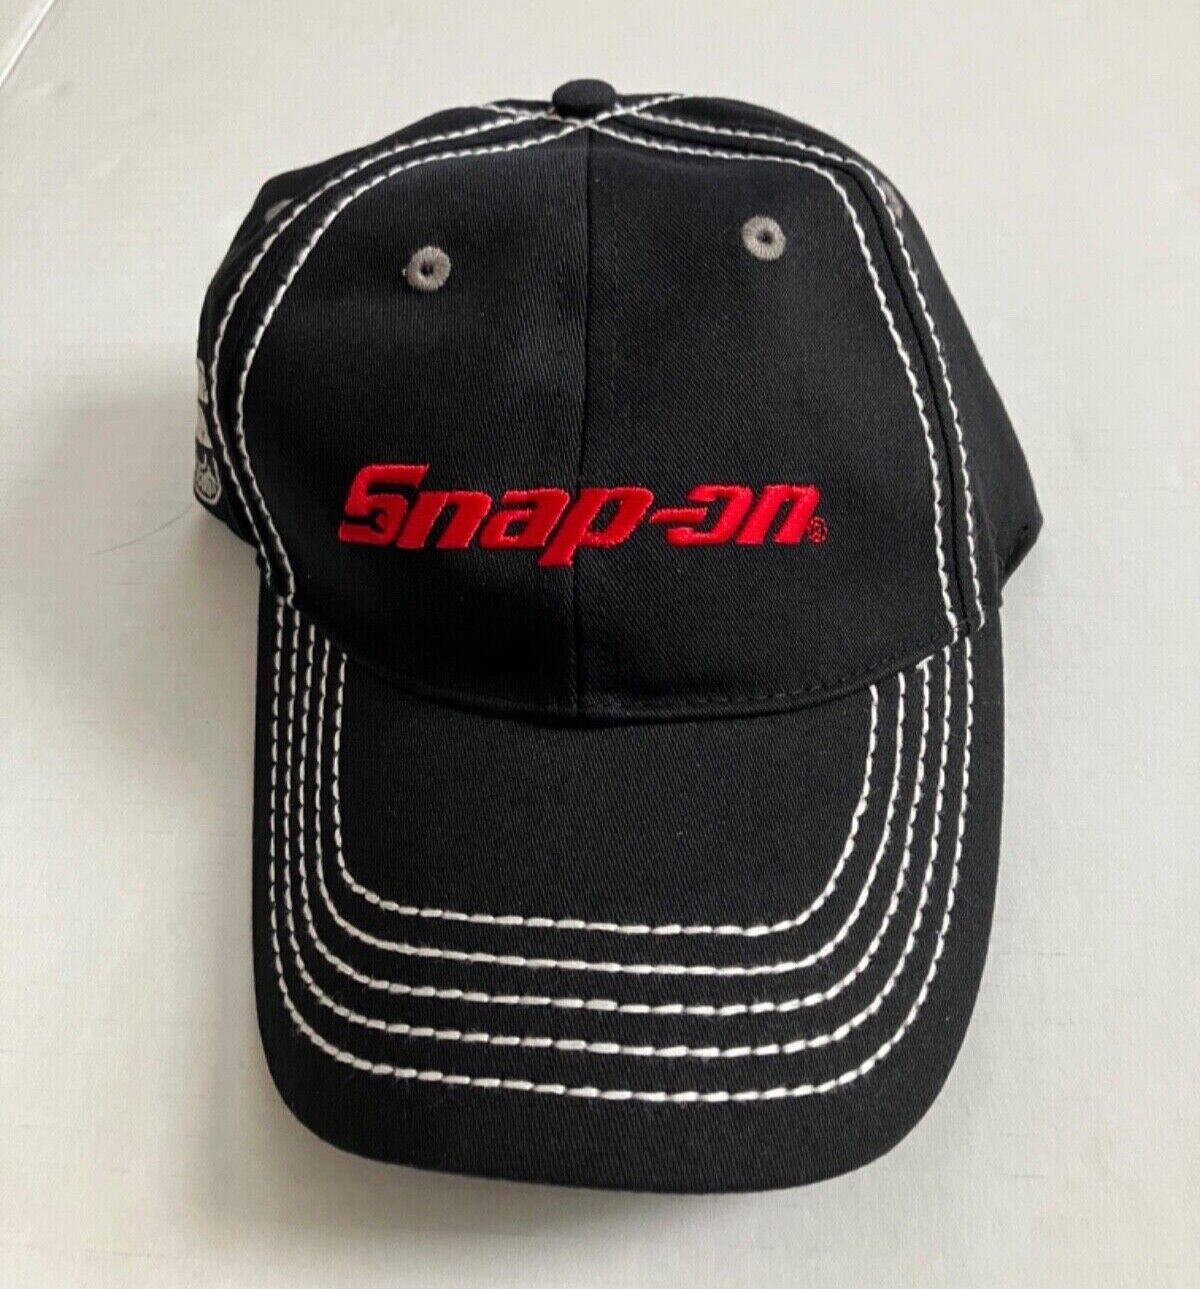 Snap on Choko Vintage Steel Black Embroidered Snapback Cap Adjustable Hat